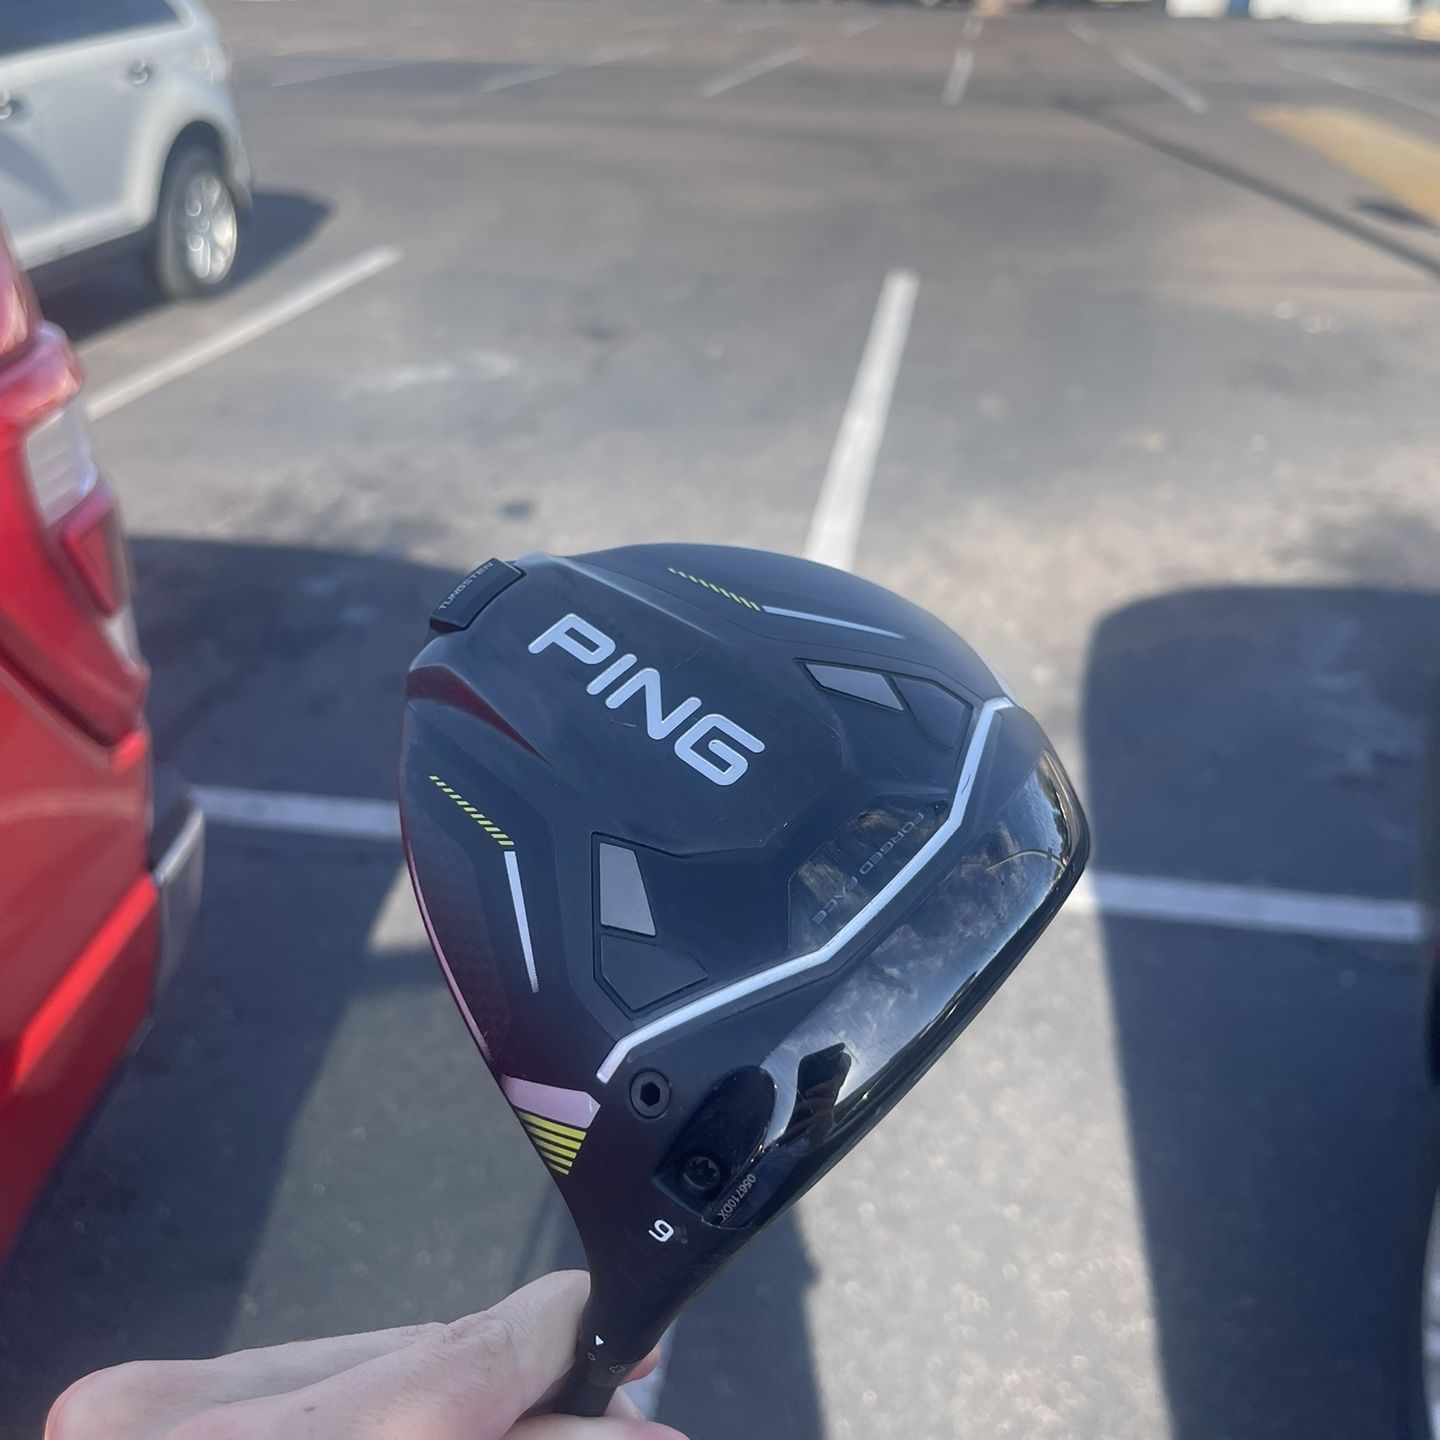 Ping G430 10k Max Golf Driver Club